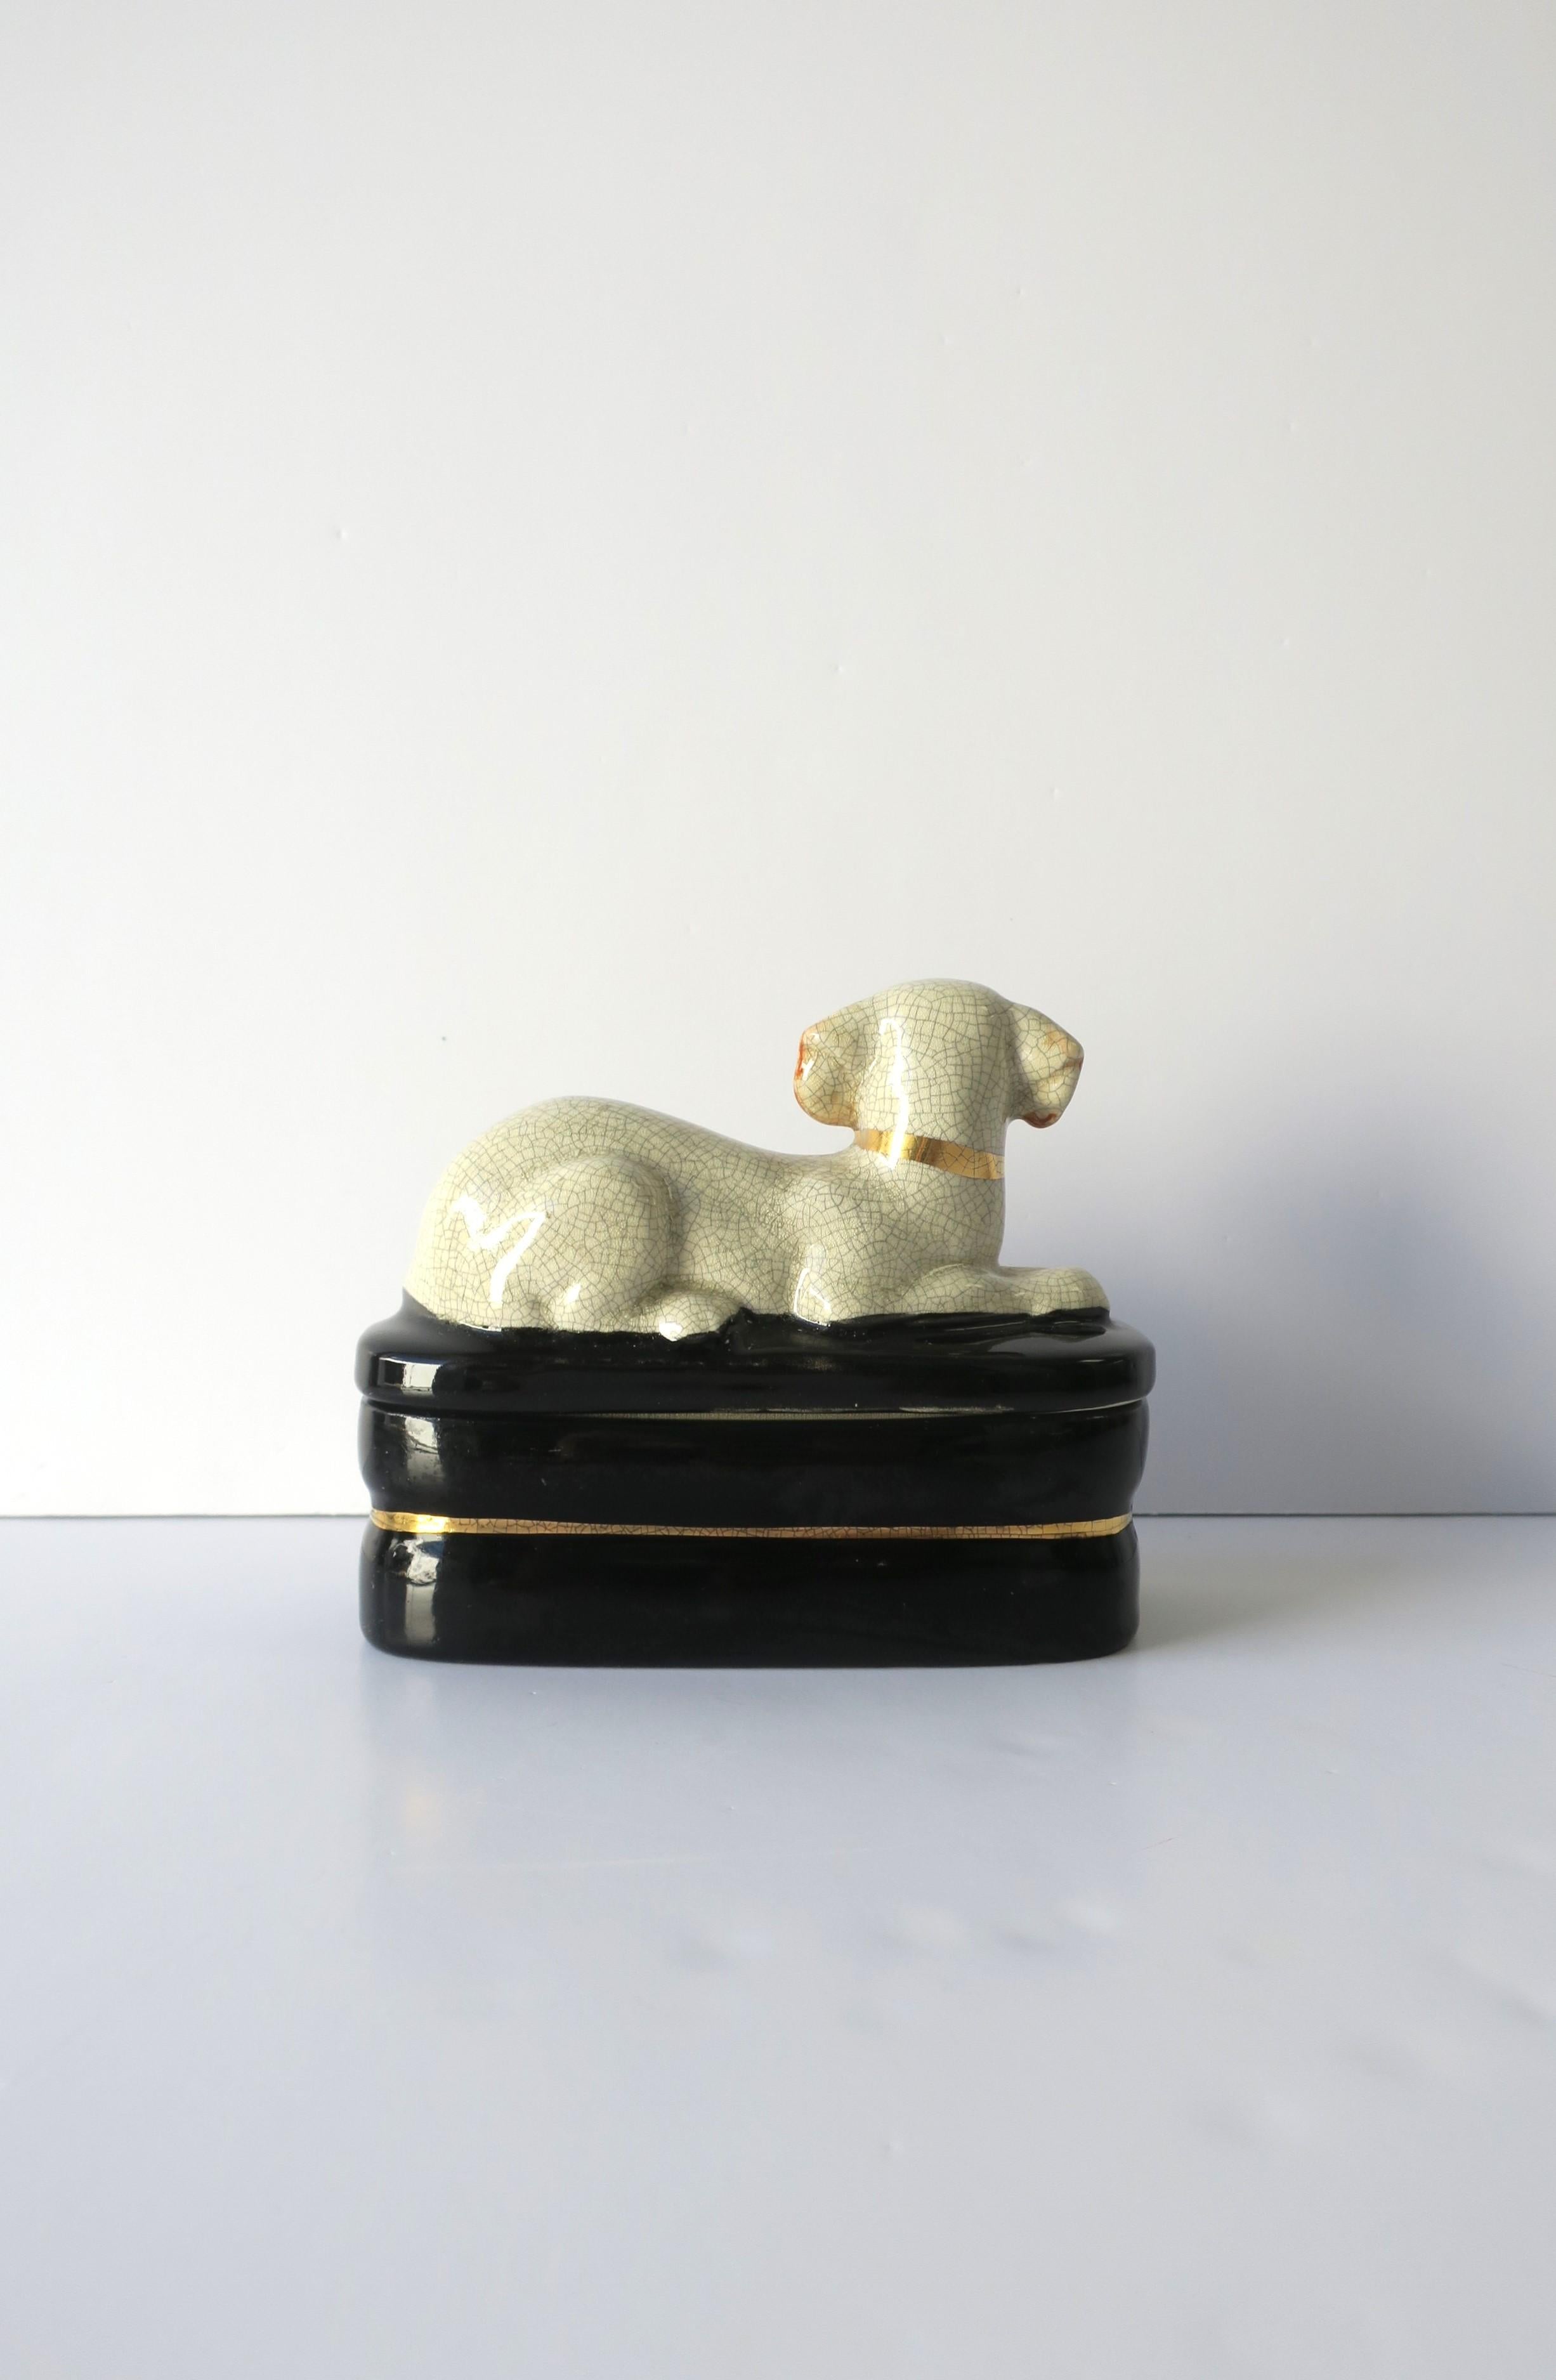 Labrador Retriever Dog Jewelry Box 8